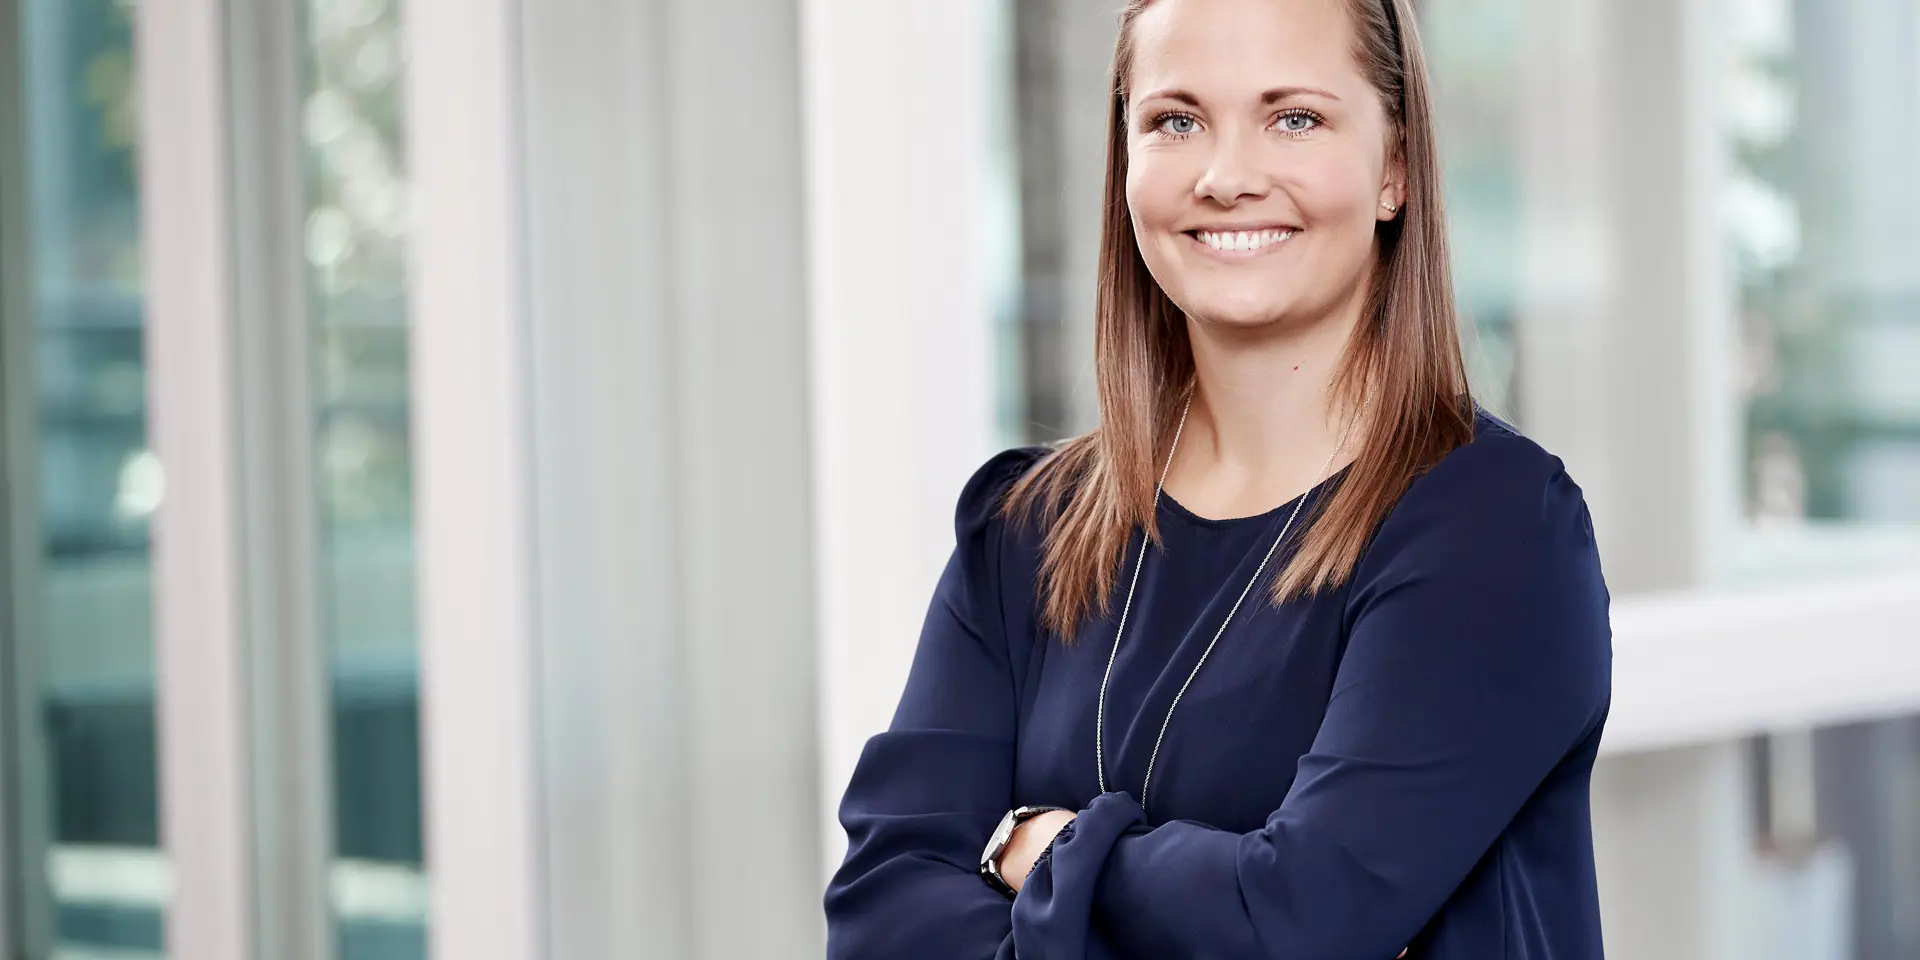 Kvindelig bankrådgiver, Jeanette Christiansen fra Vestjysk Bank i Farsø, er klar til at hjælpe med økonomisk rådgivning 